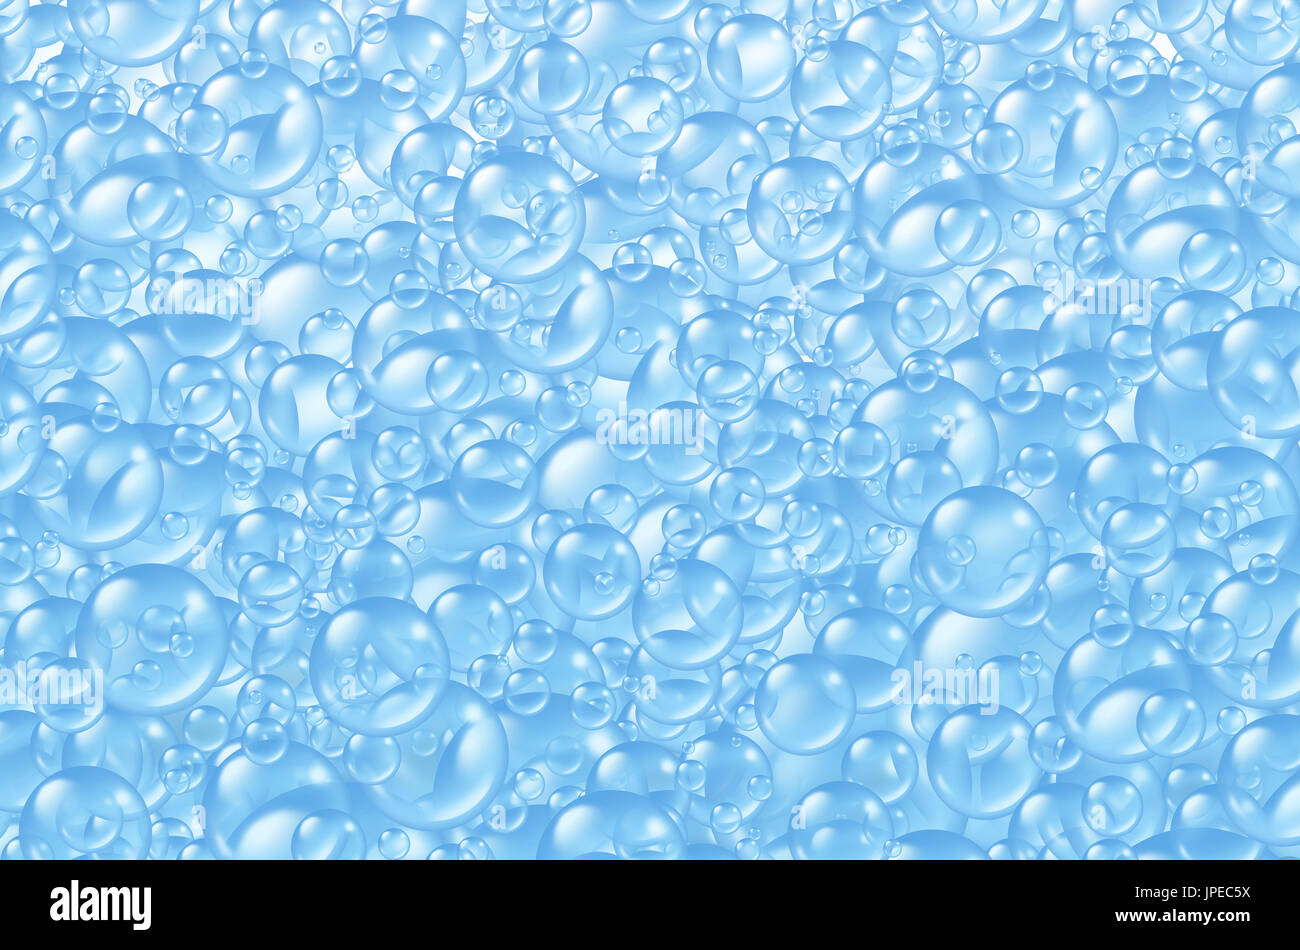 Fondo con burbujas de jabón de baño transparente como un montón de esferas  de espuma en muchos tamaños circulares flotantes azul limpio como símbolos  de lavado Fotografía de stock - Alamy